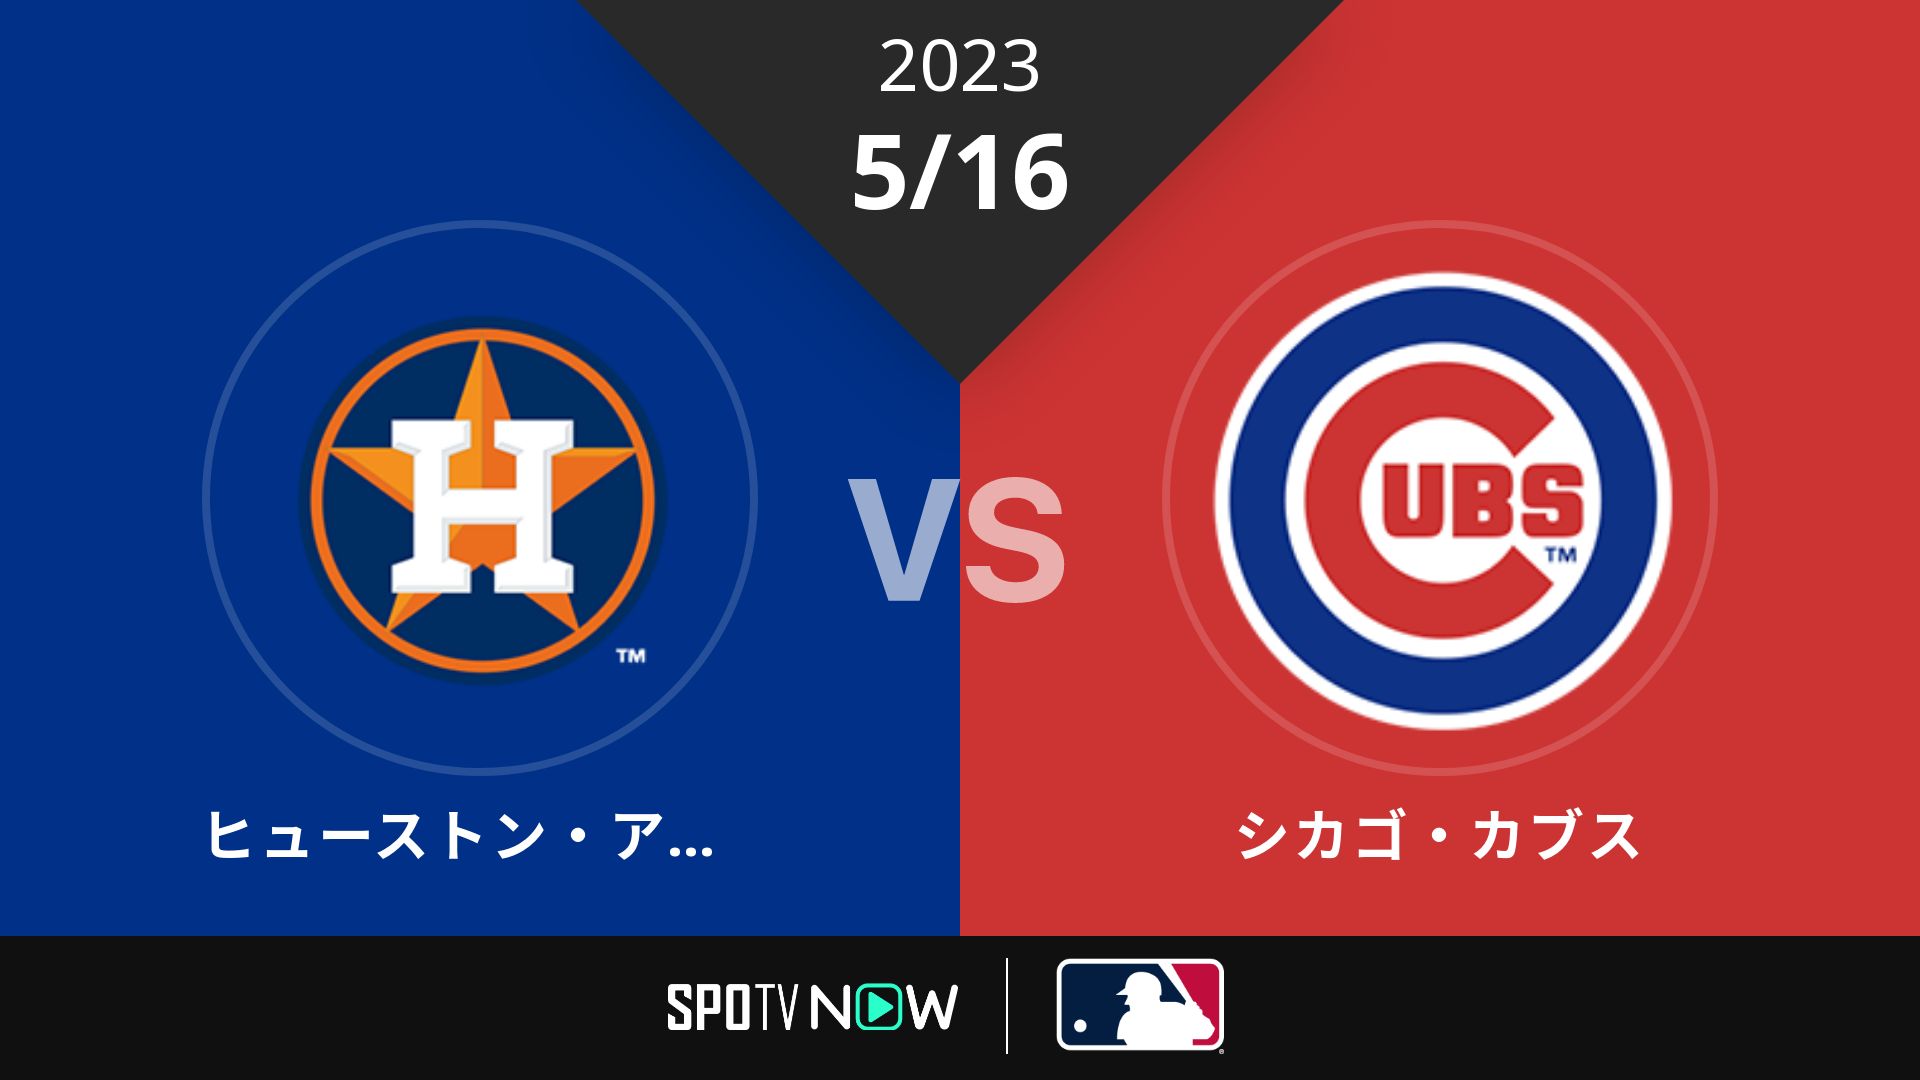 2023/5/16 アストロズ vs カブス [MLB]